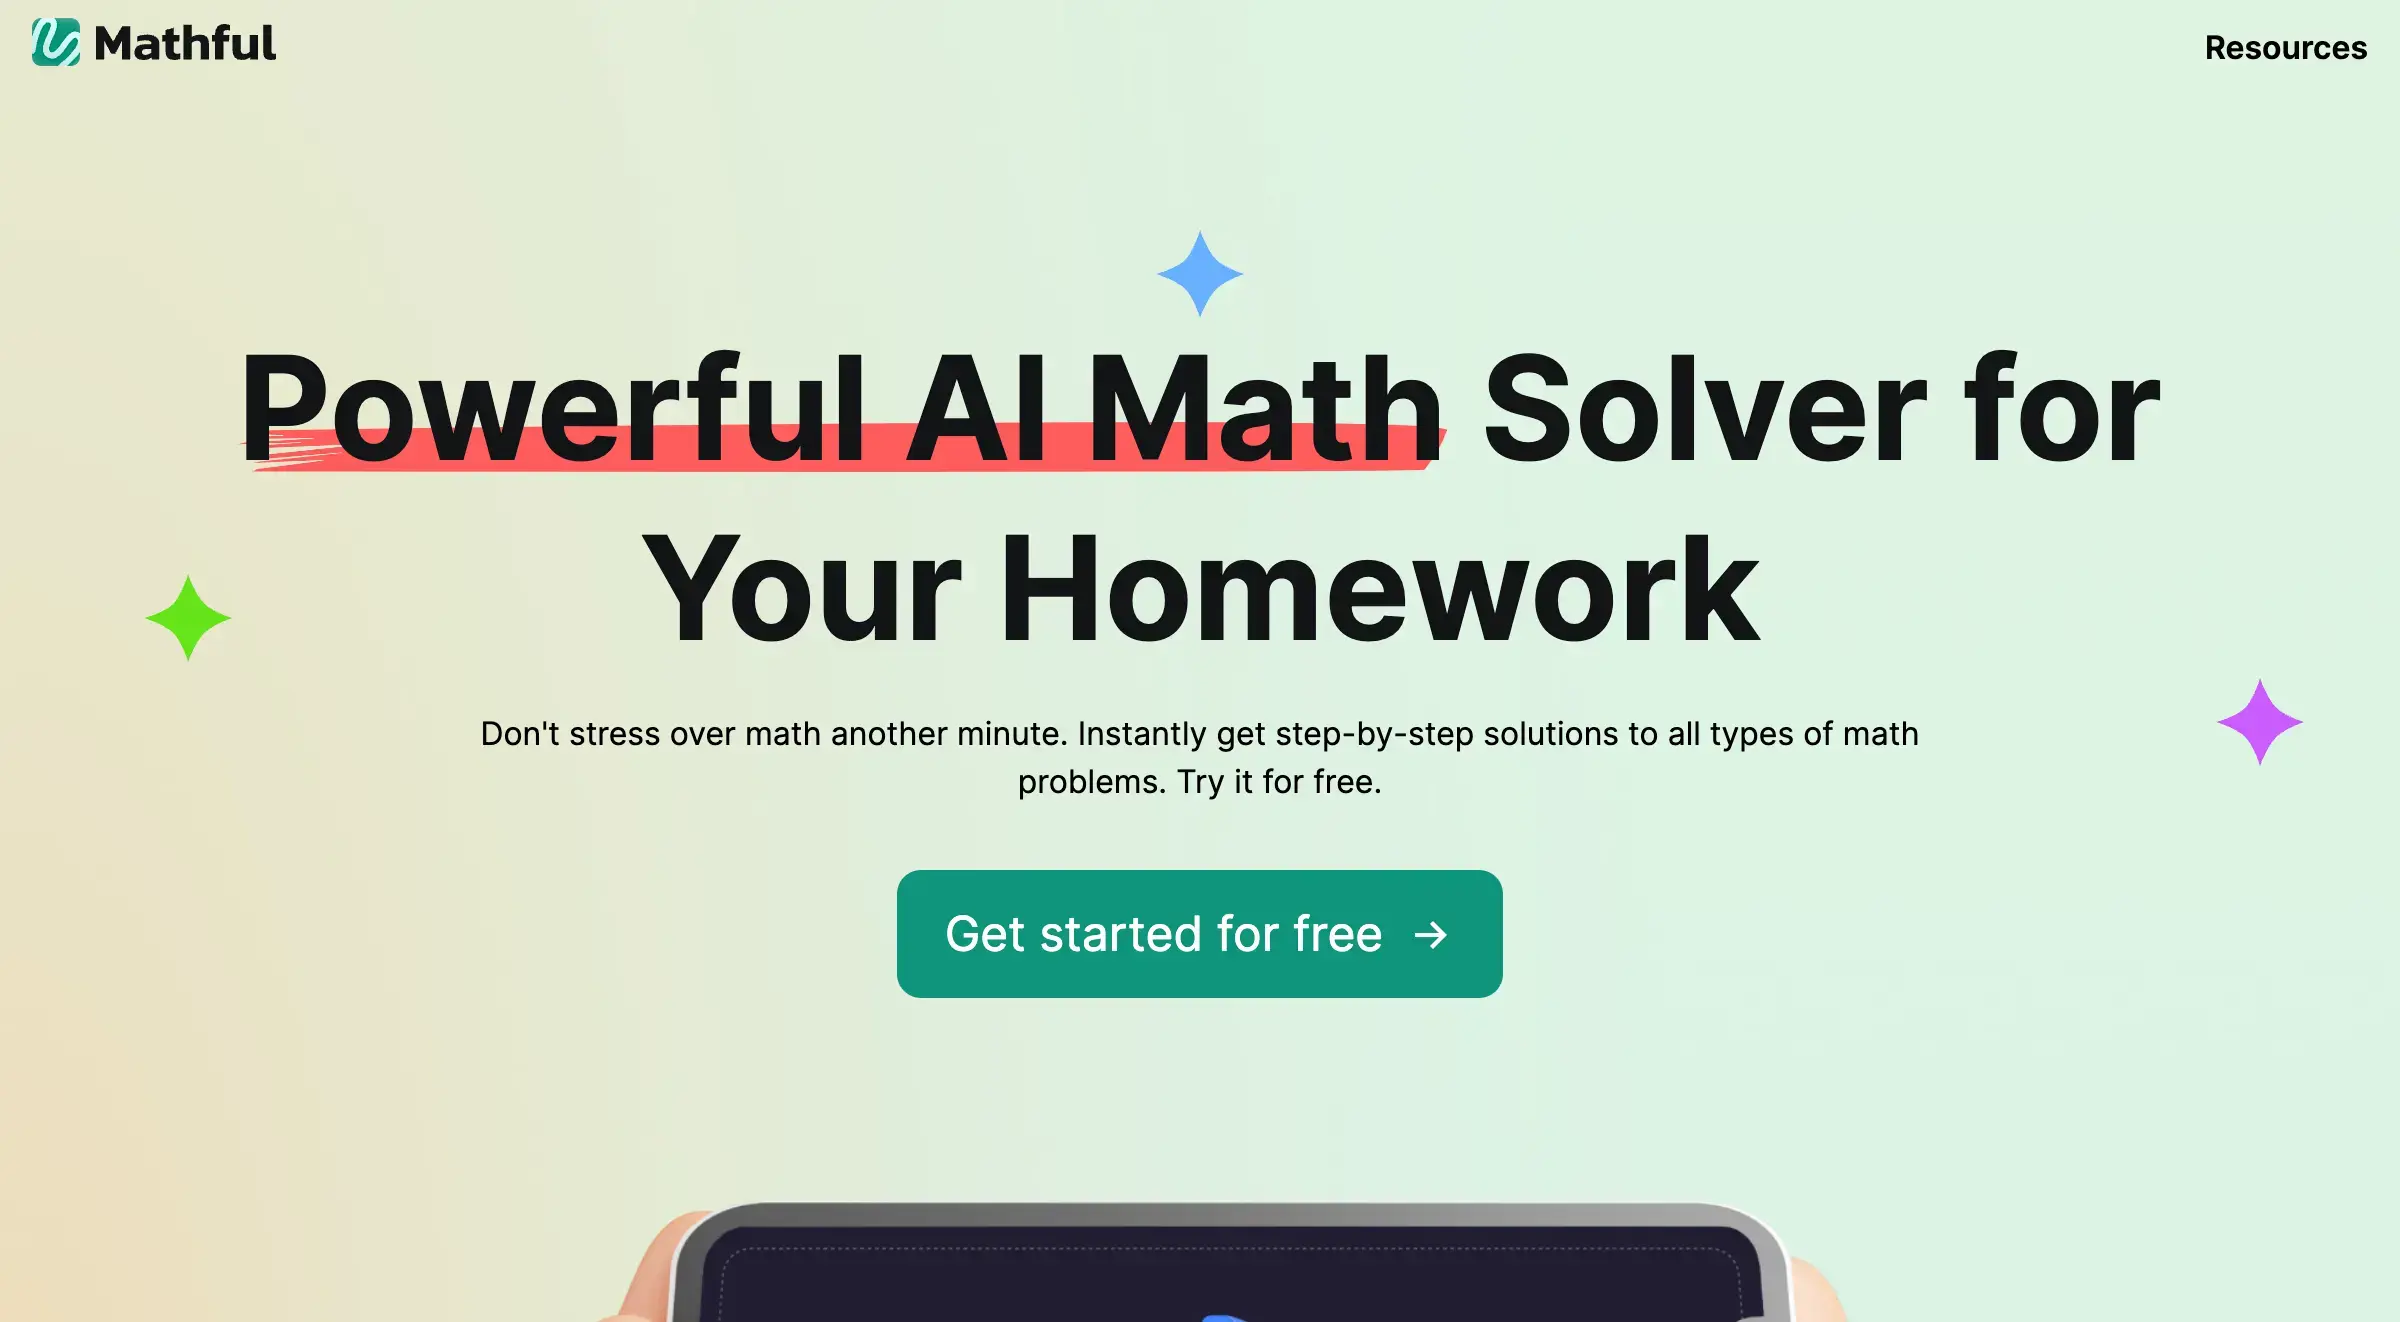 Mathful.com